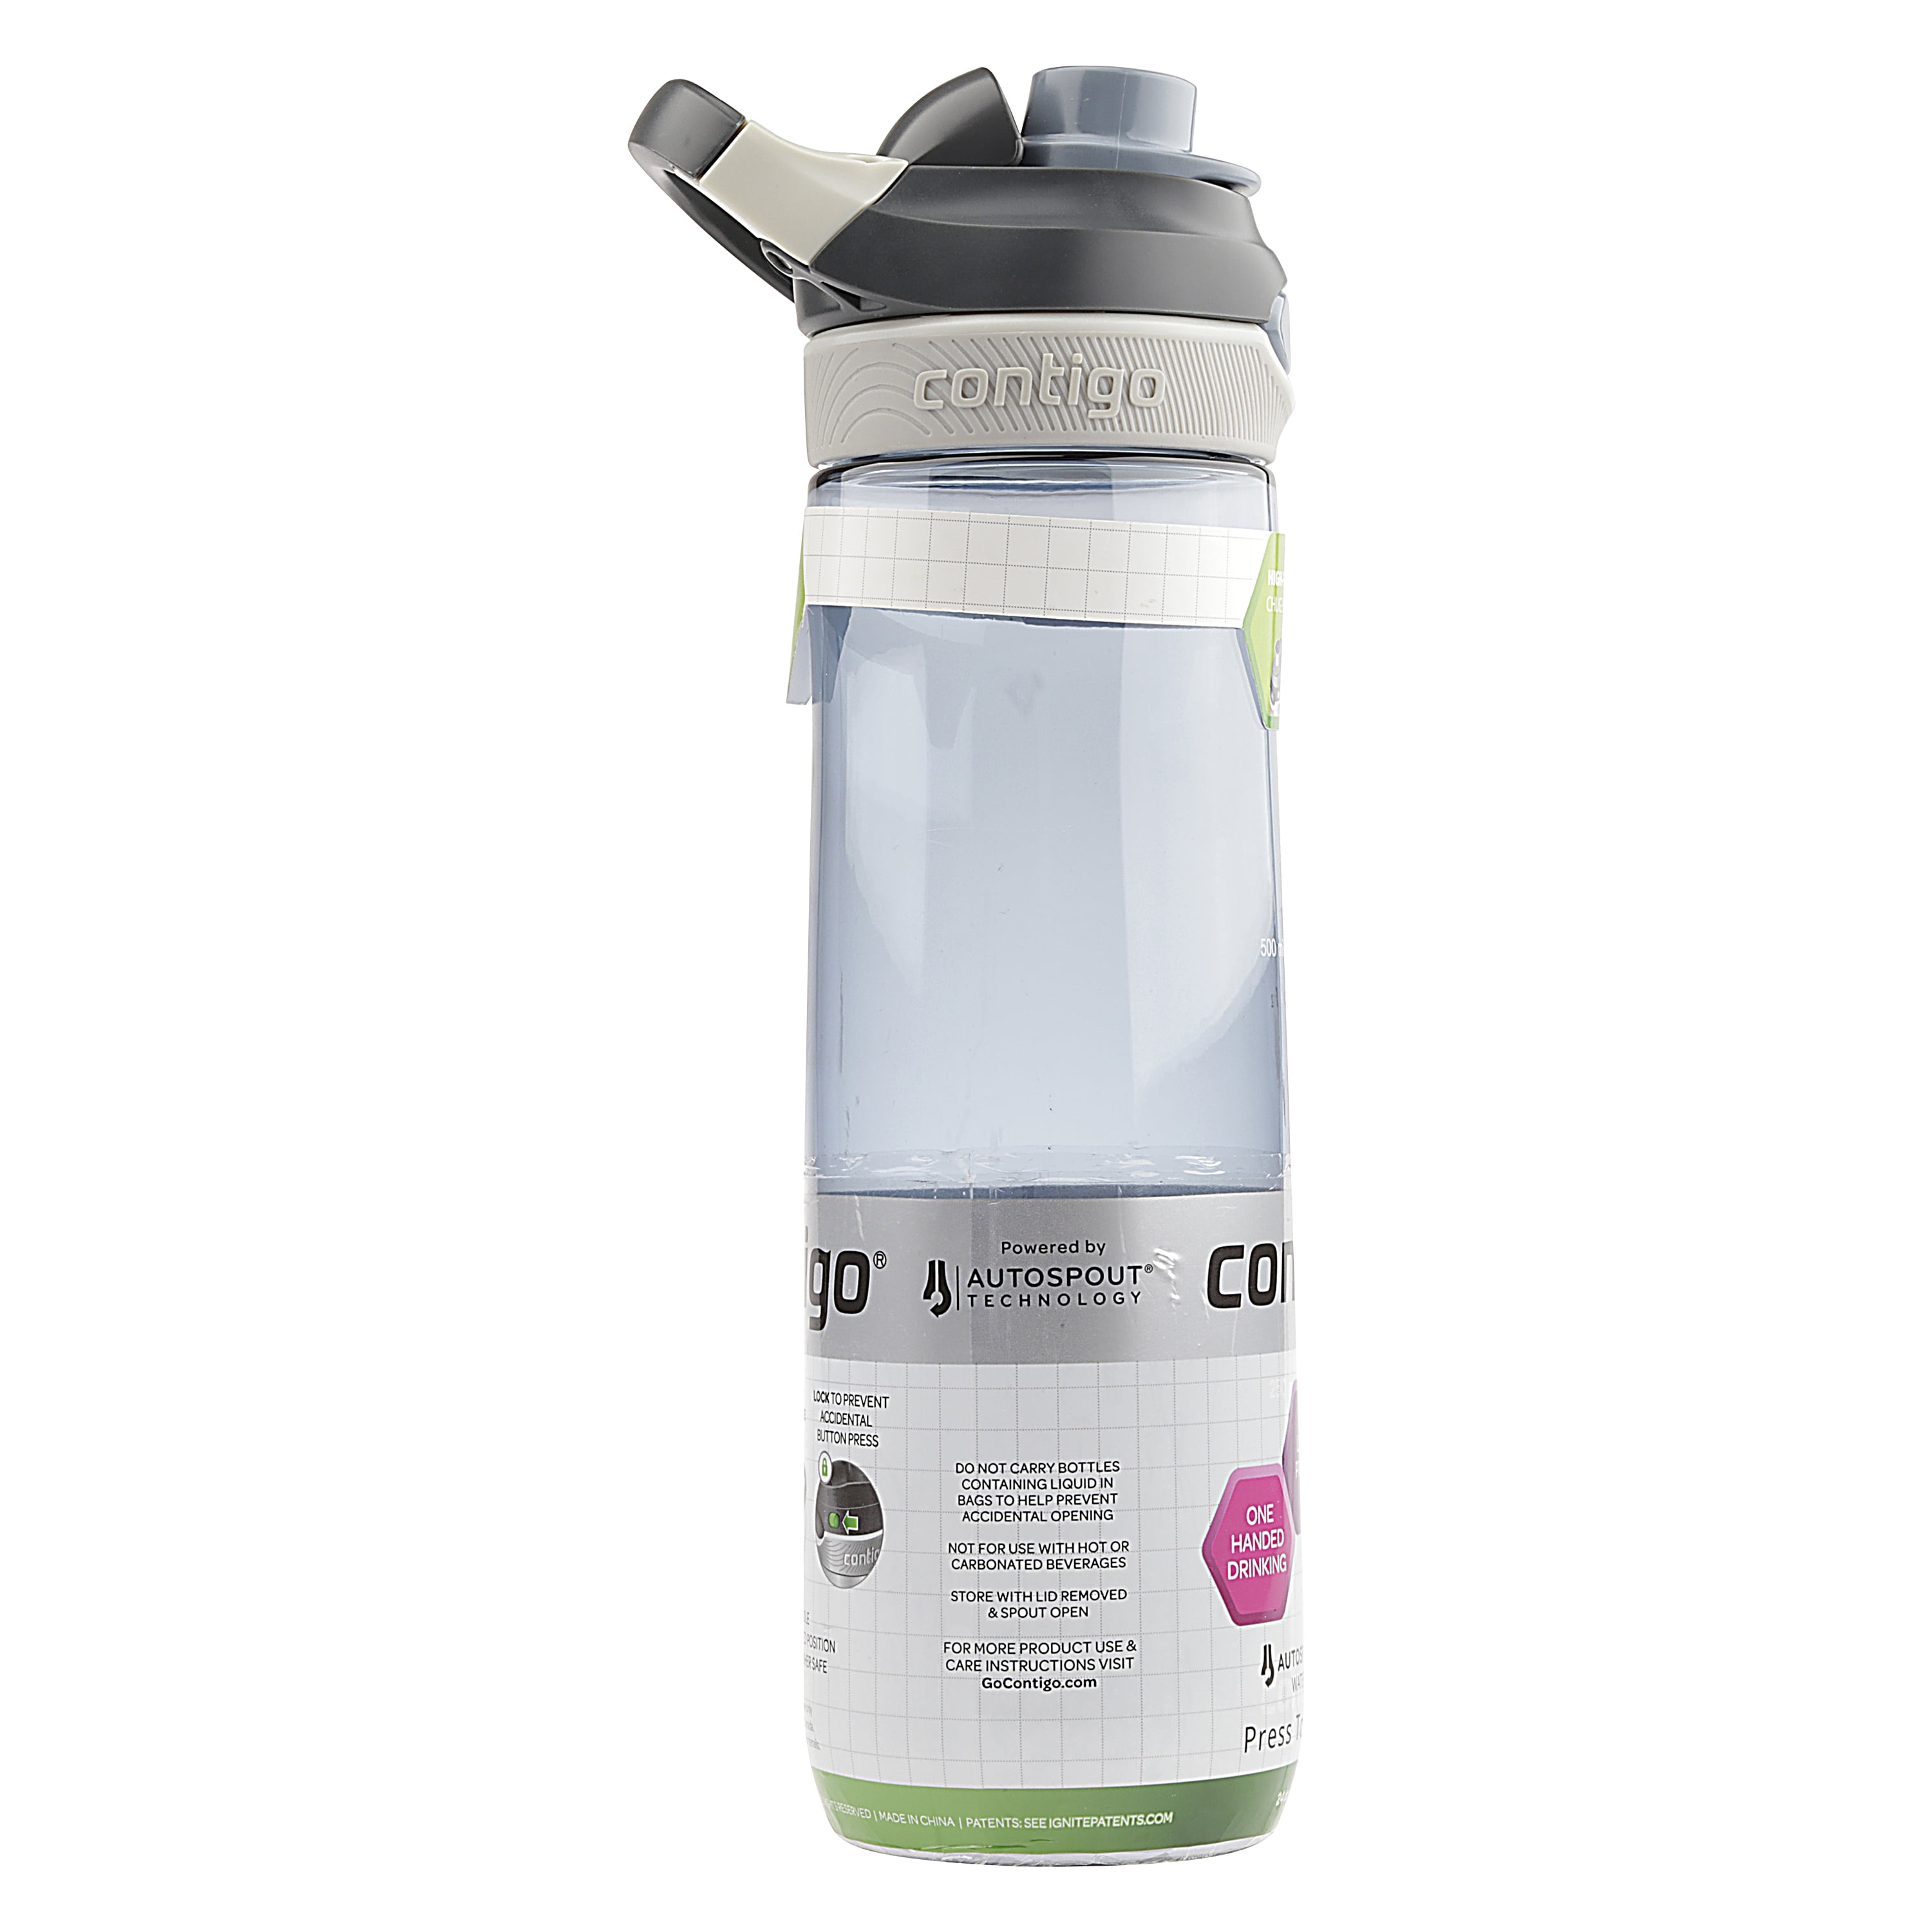 Contigo AUTOSPOUT Chug Water Bottle Review